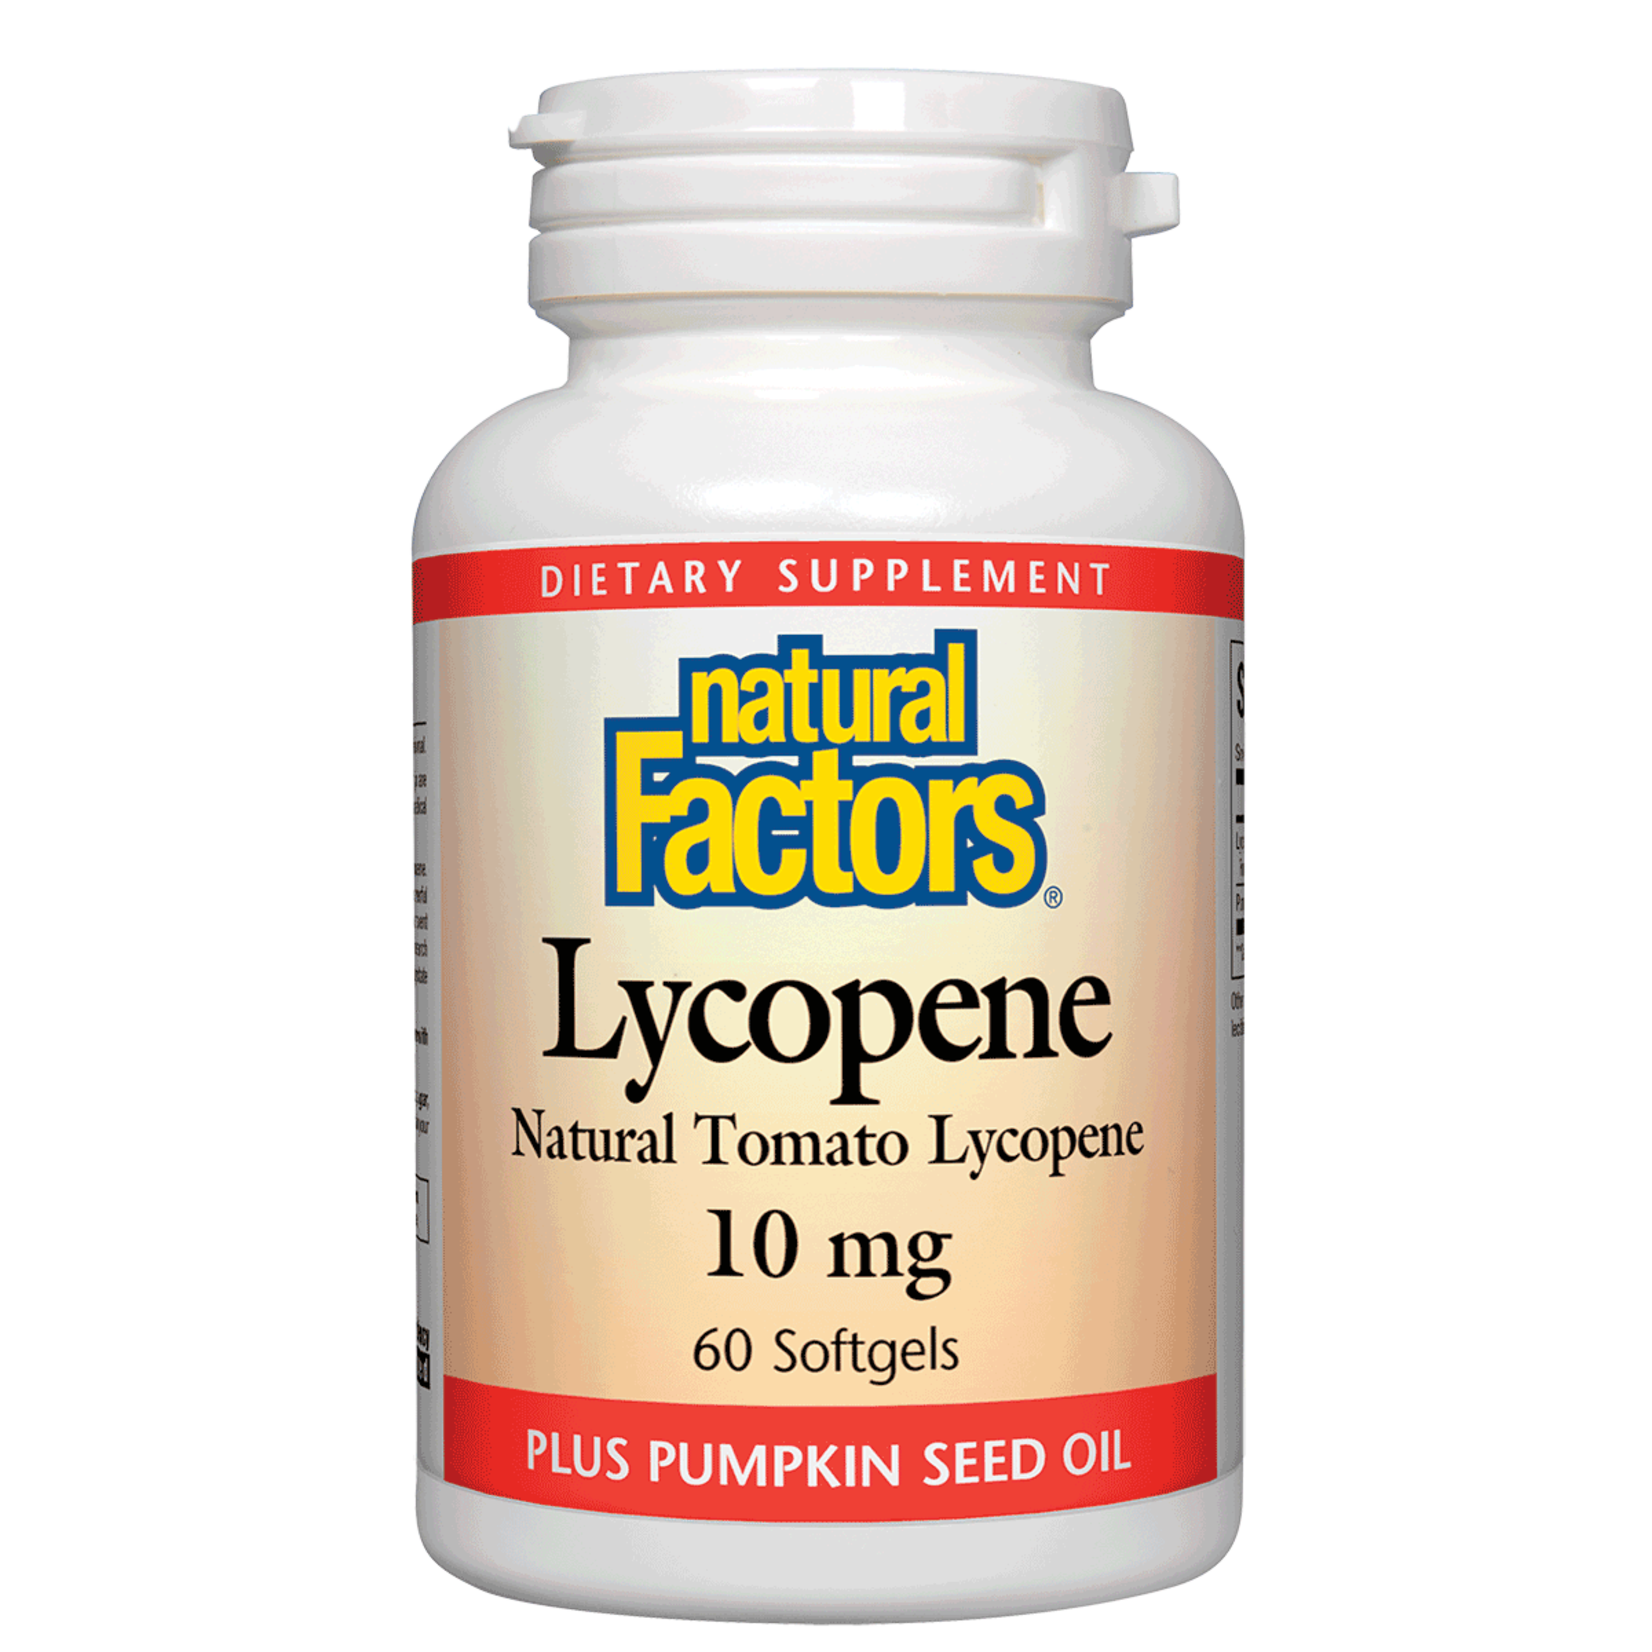 Natural Factors Natural Factors - Lycopene 10 mg - 60 Softgels